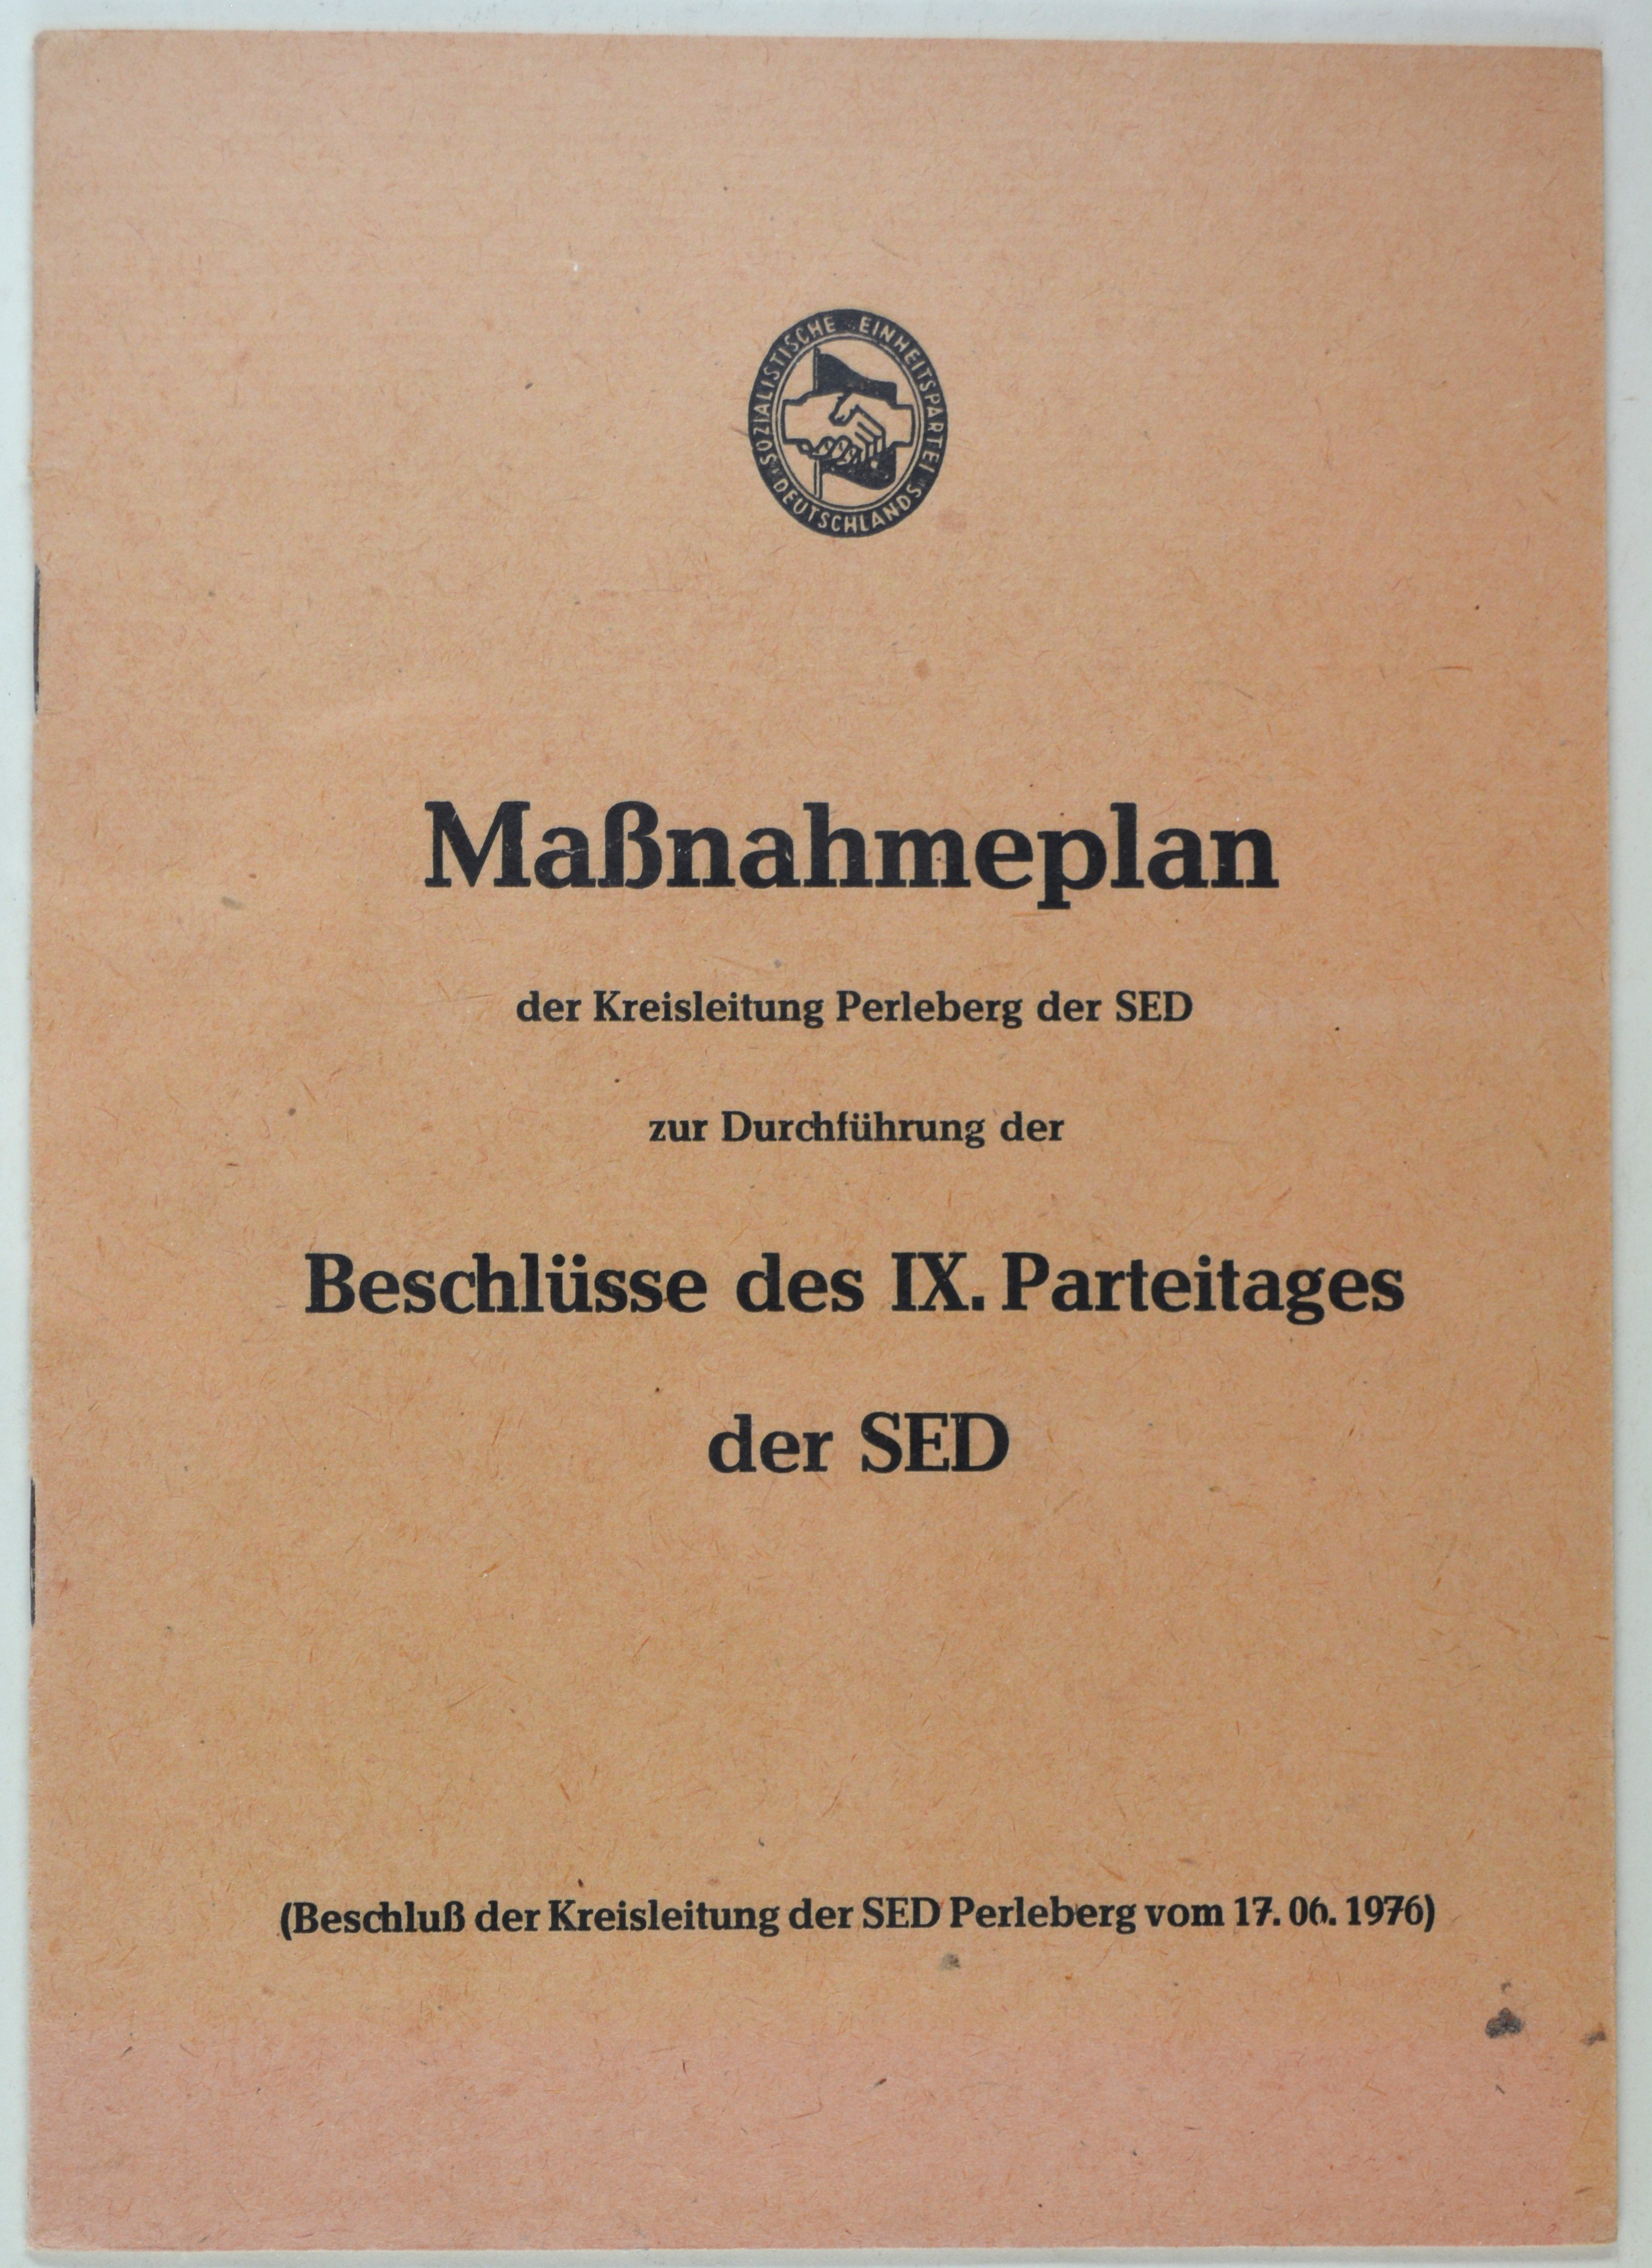 Broschüre: Maßnahmenplan der Kreisleitung Perleberg der SED (DDR Geschichtsmuseum im Dokumentationszentrum Perleberg CC BY-SA)